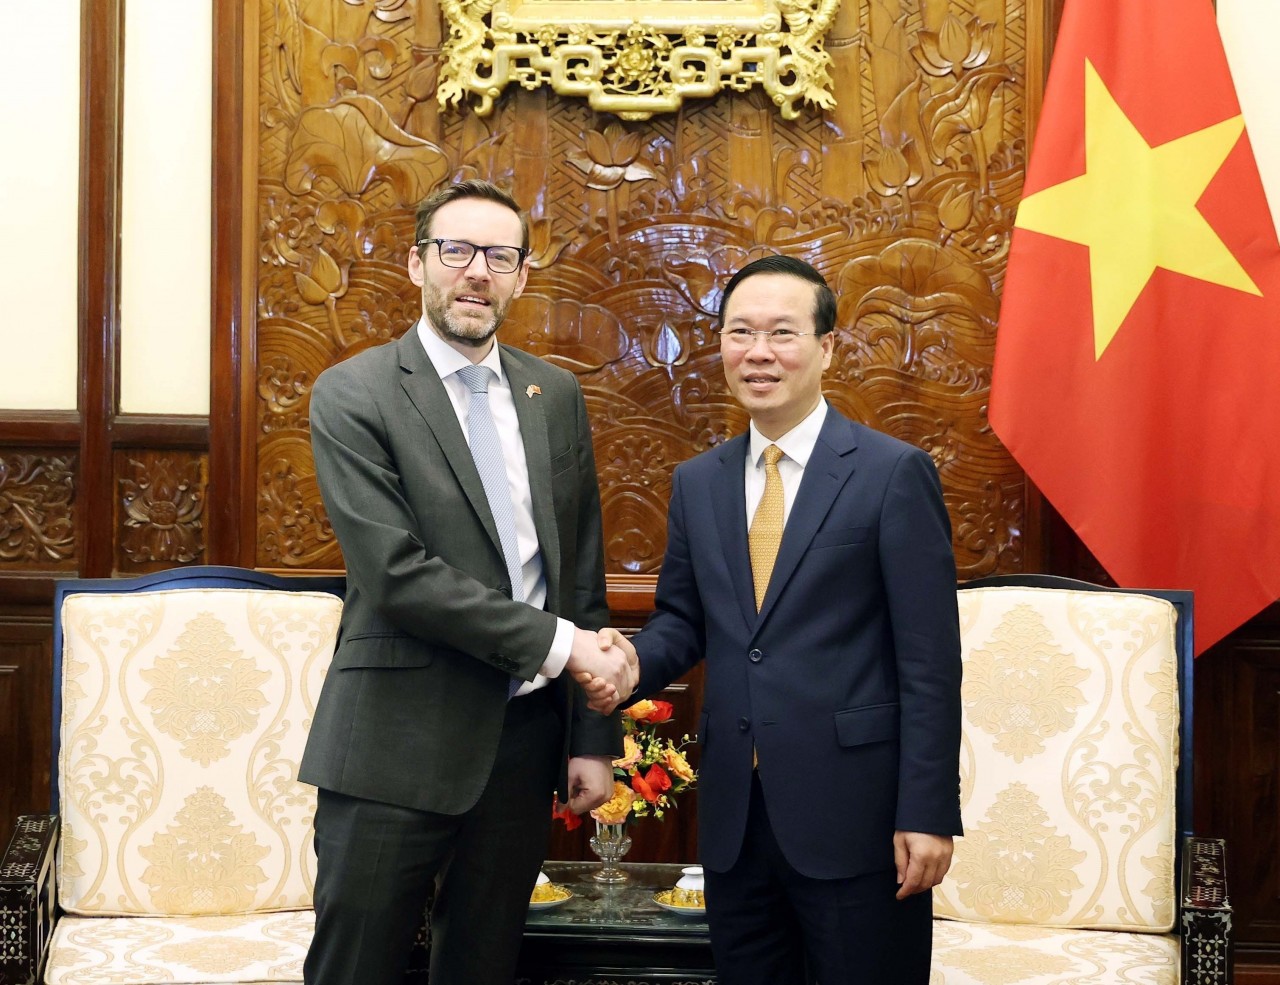 Đại sứ Iain Frew: Quan hệ Việt-Anh đang ở thời điểm rất sôi động | Chính trị | Vietnam+ (VietnamPlus)